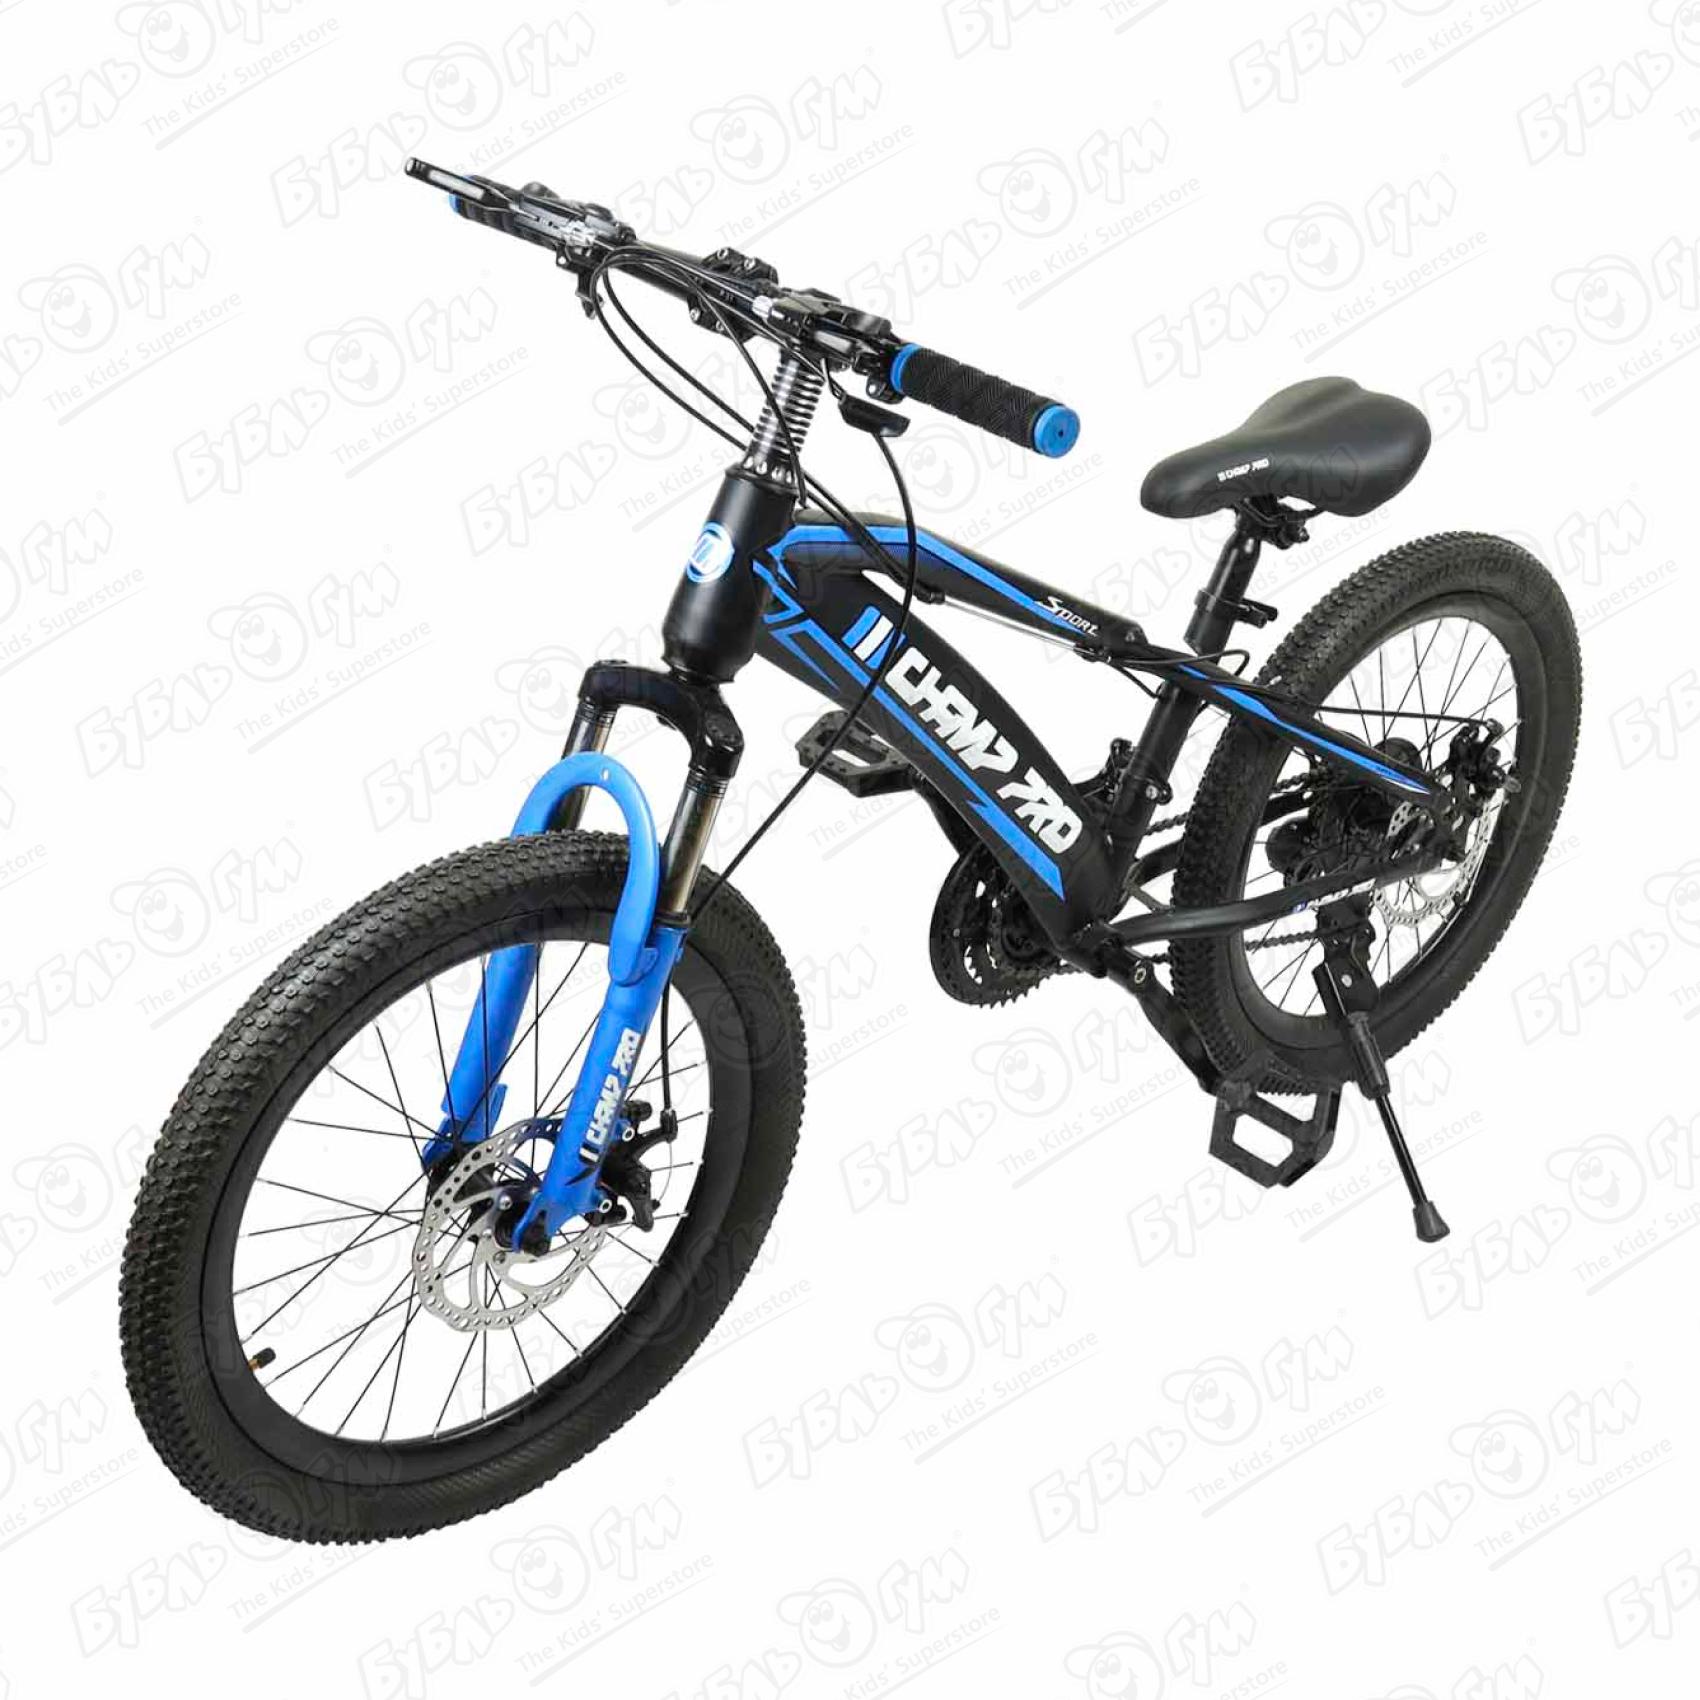 Велосипед Champ Pro горный 21скорость B20 16кг черно-синий горный велосипед altair haro flightline one 29 год 2021 синий ростовка 18